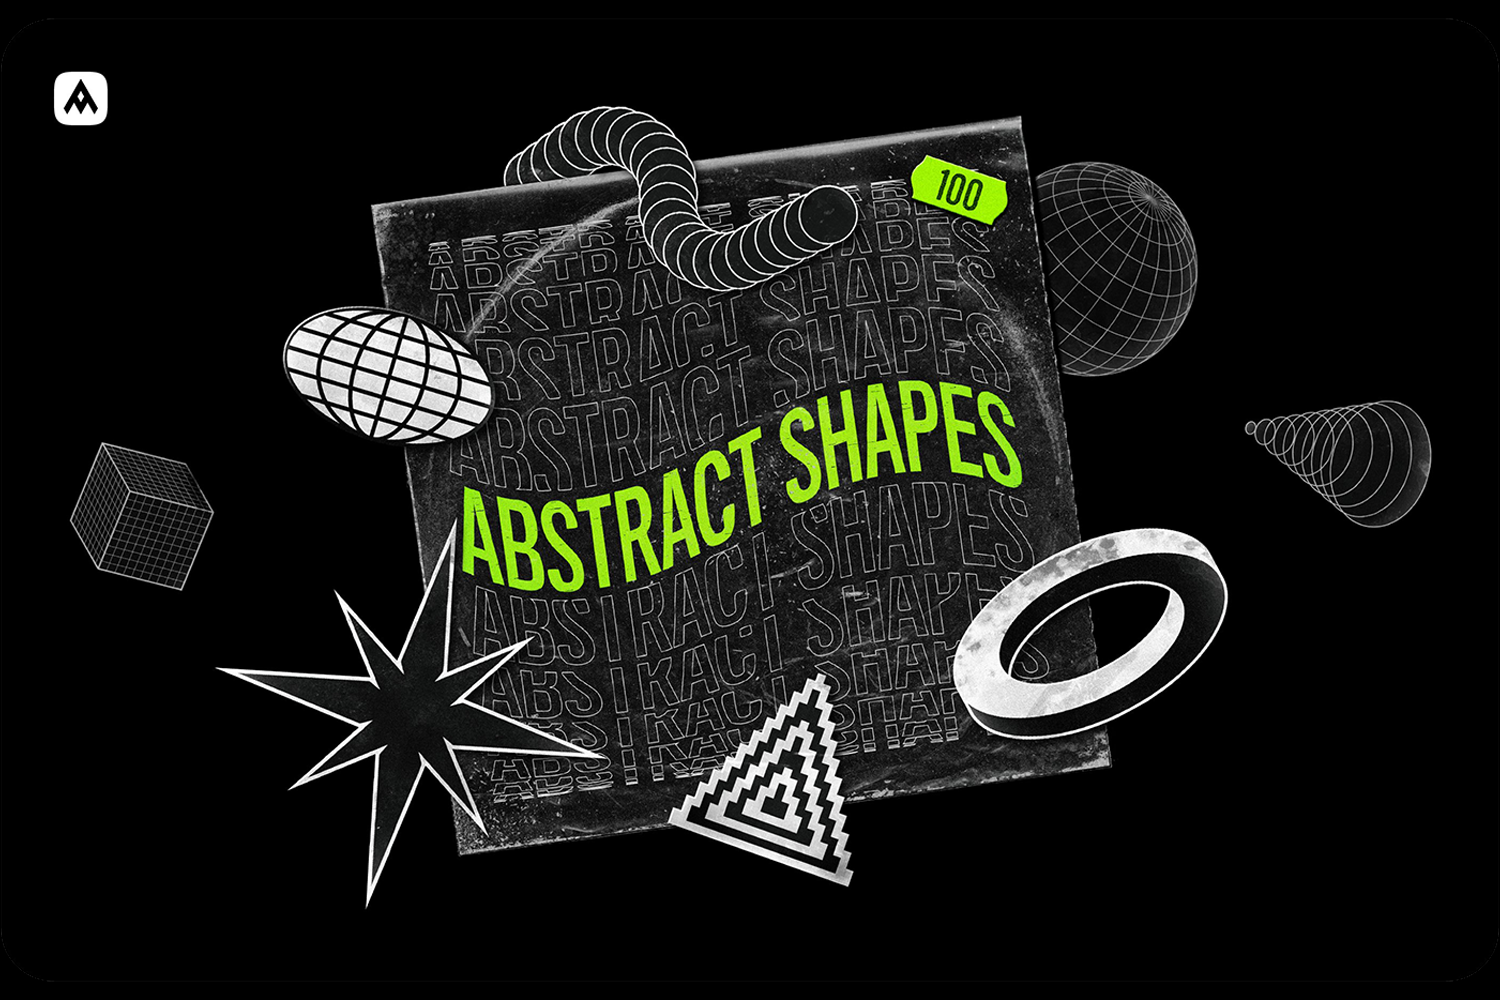 3249 100款艺术抽象潮流酸性几何多边形logo图标合集ai矢量国外设计素材 Abstract shapes 100 design elements